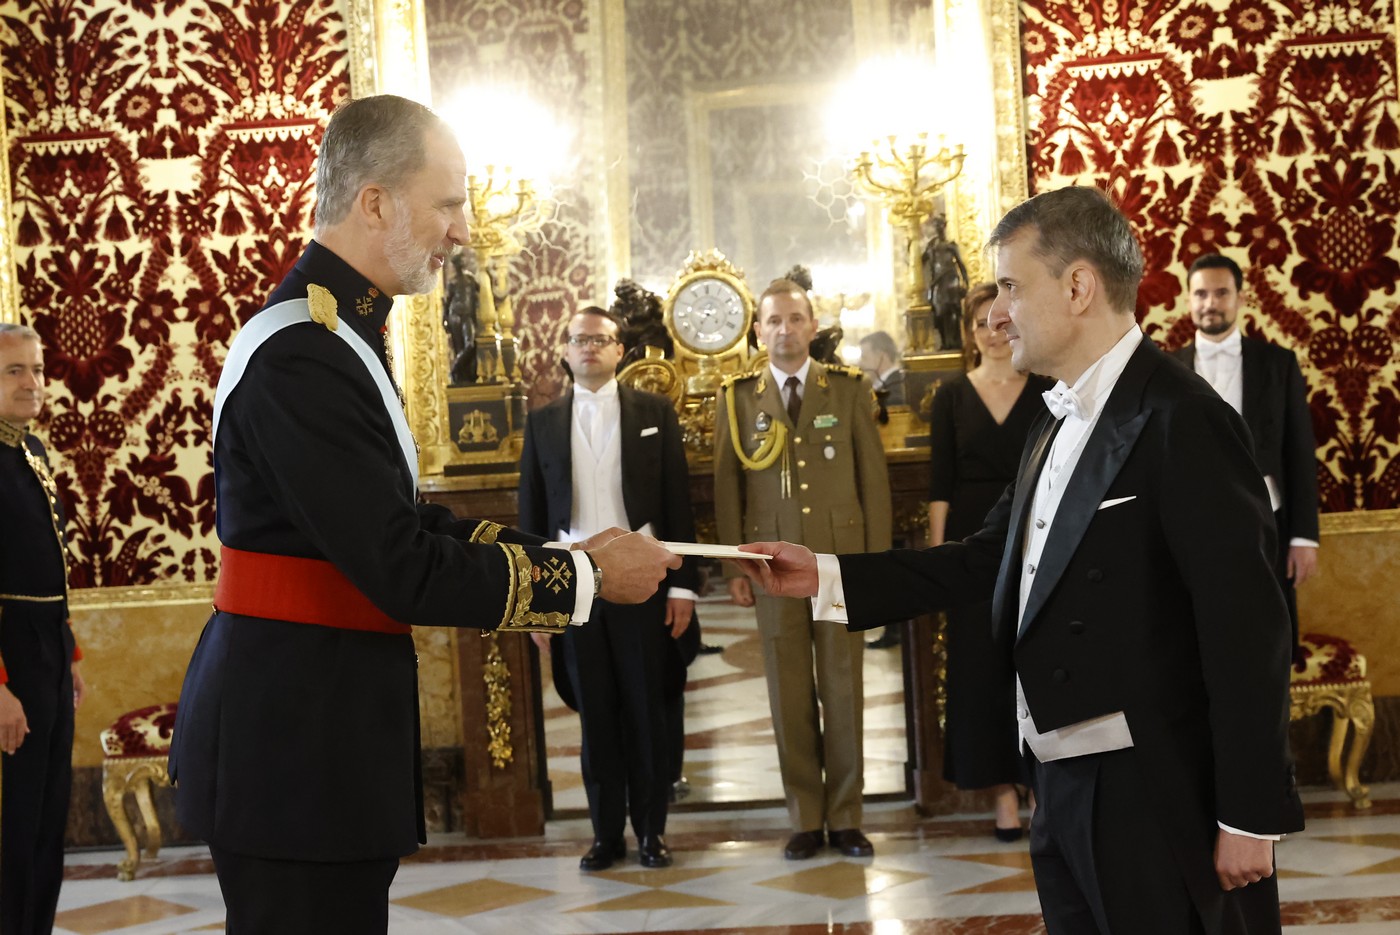 Don Felipe recibe las Cartas Credenciales del Embajador de Rumanía, George Gabriel Bologan en la primera ceremonia completa tras la pandemia. Fuente: Casa de S. M. el Rey